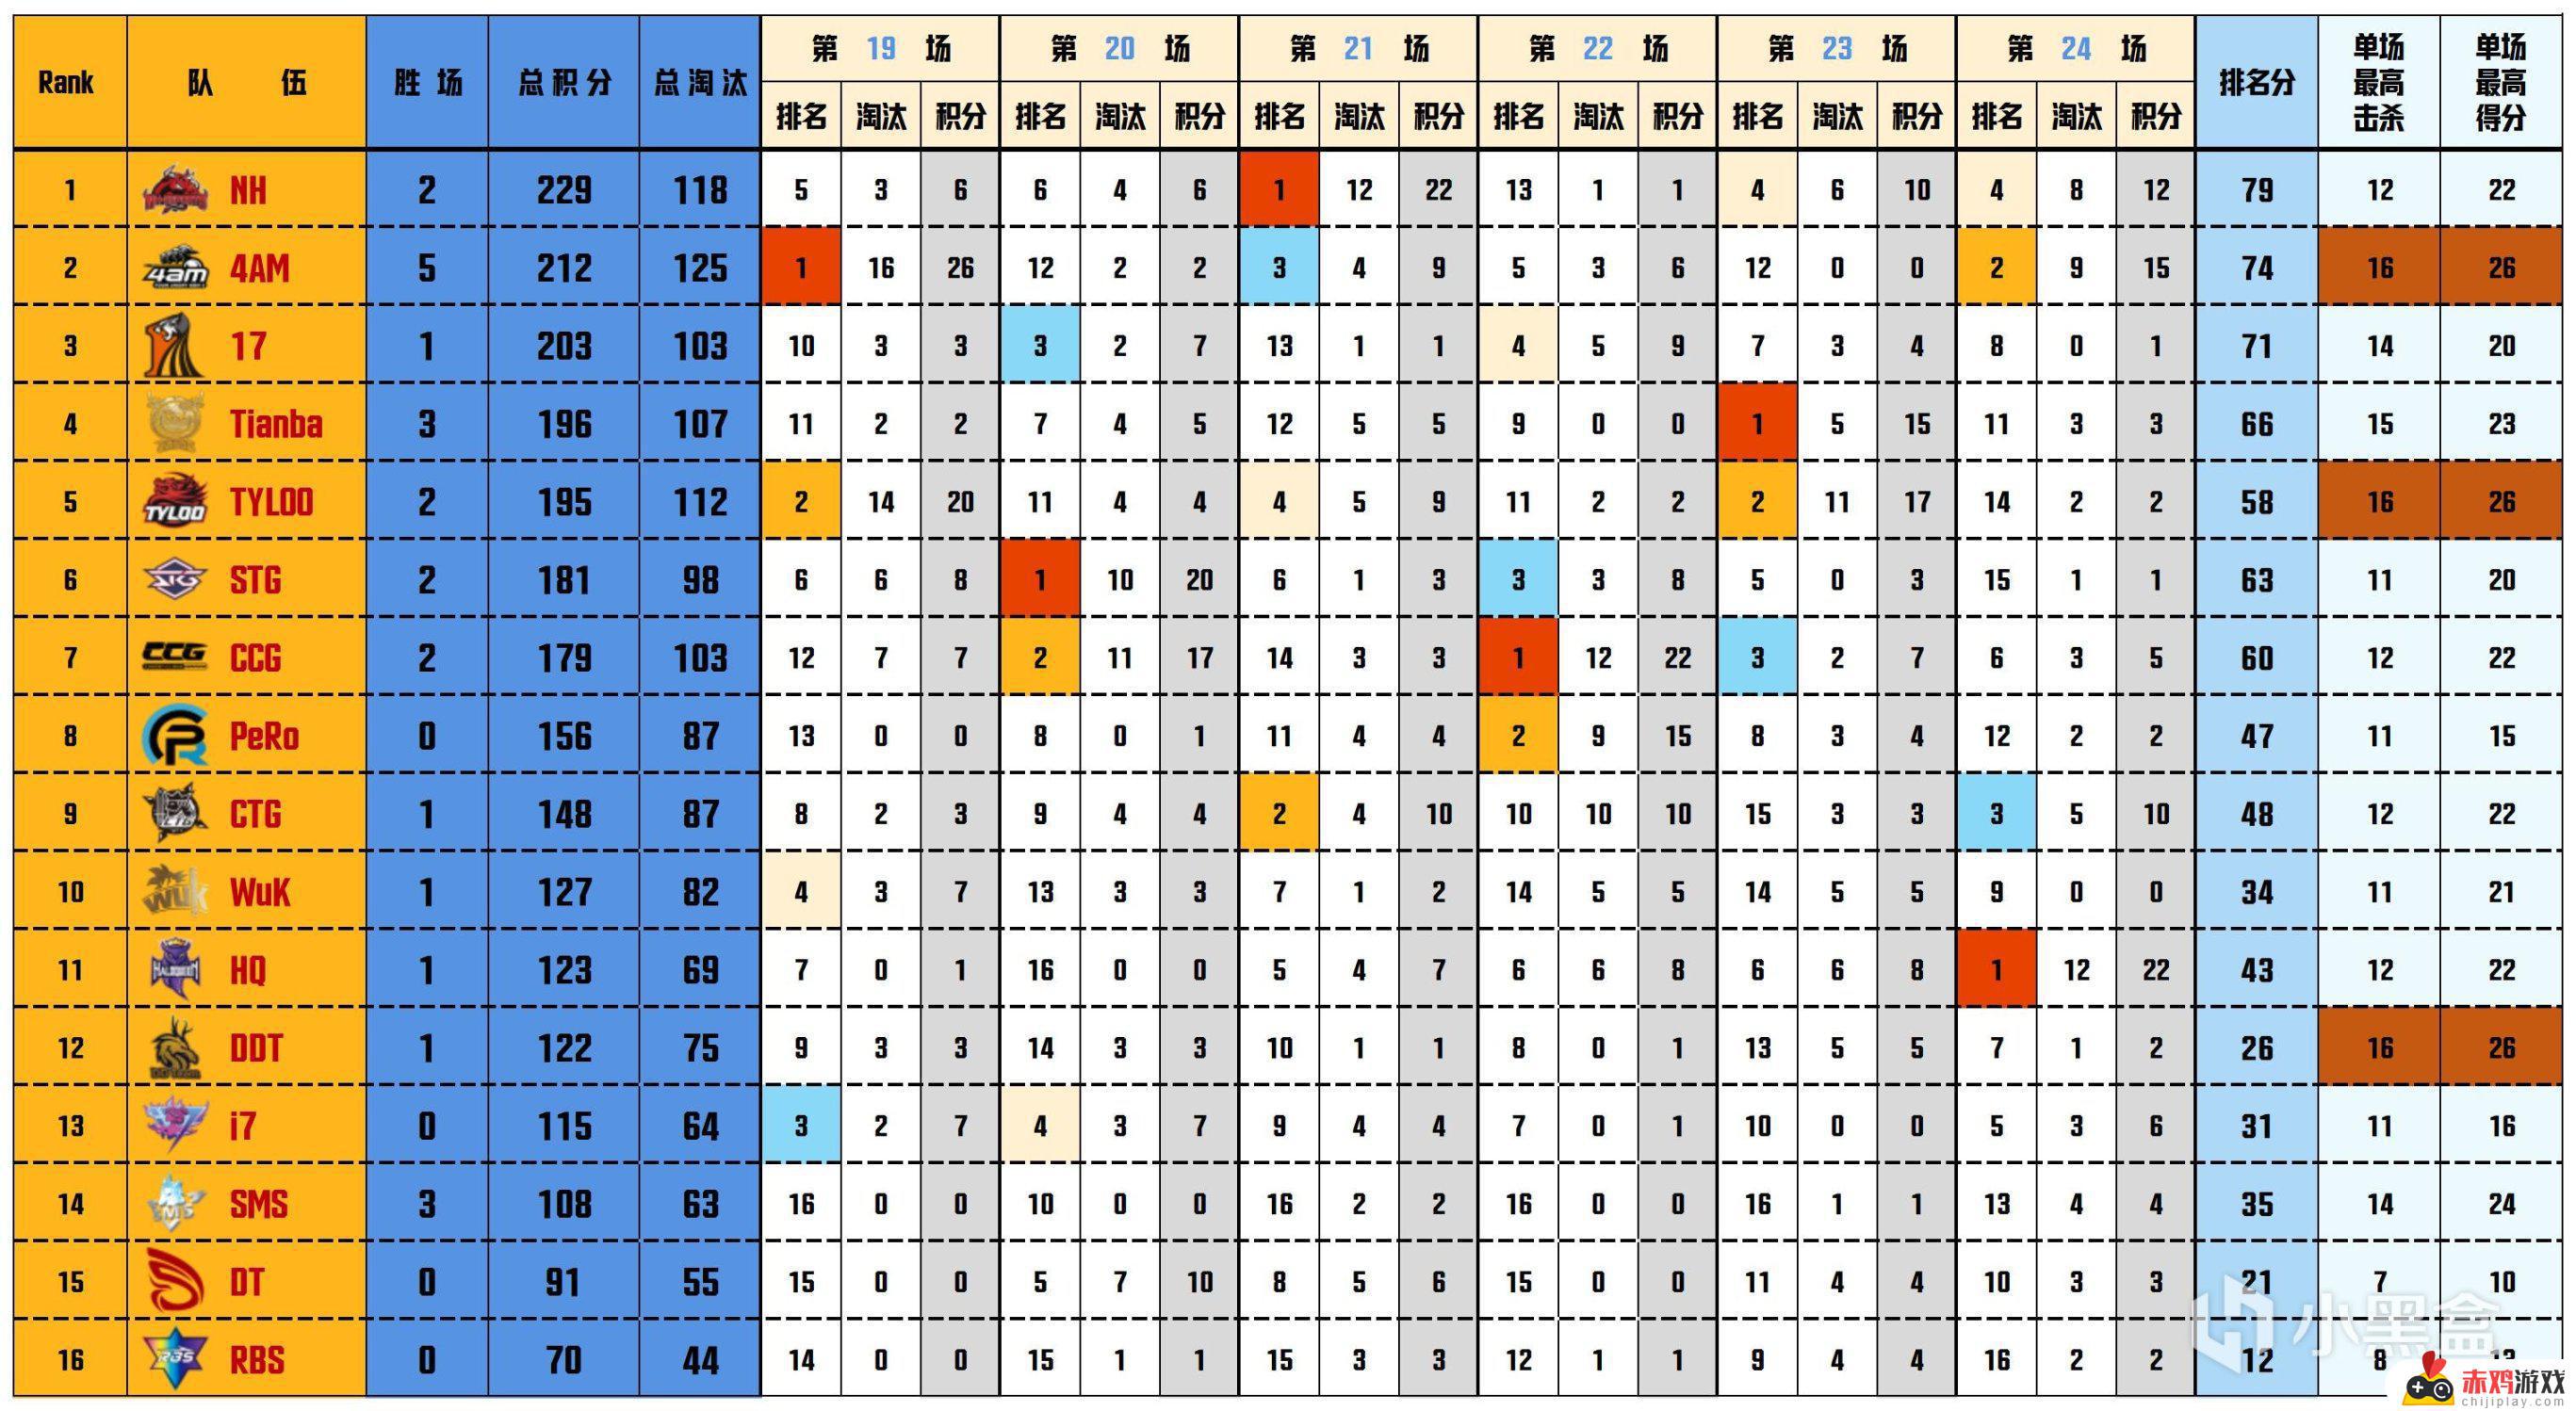 【数据流】PCL季后赛D4/5,NH 229分回到榜首,CRAZY112战神42杀